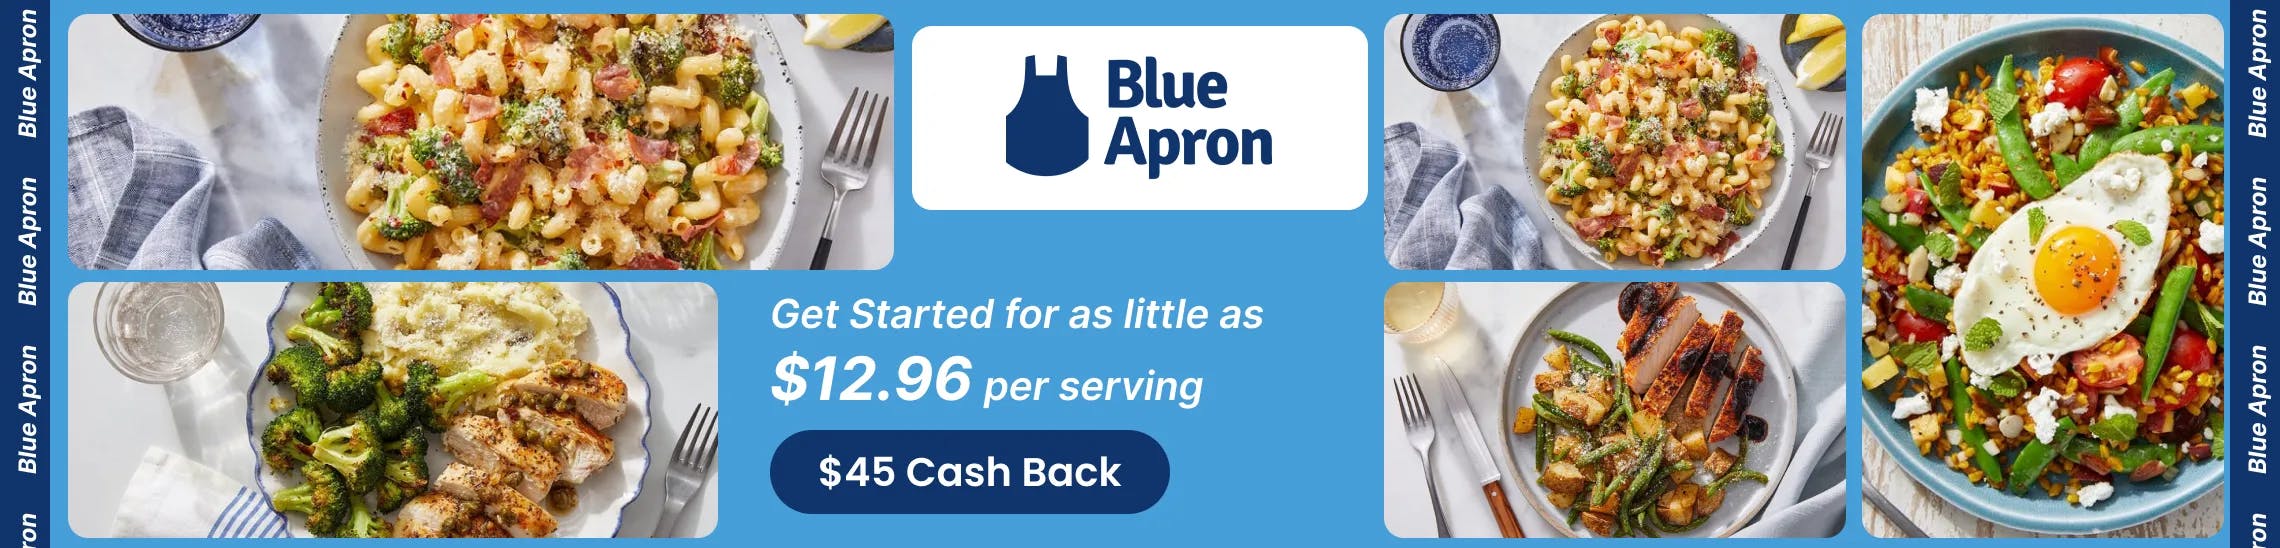 Blue Apron Promo Codes & Cash Back